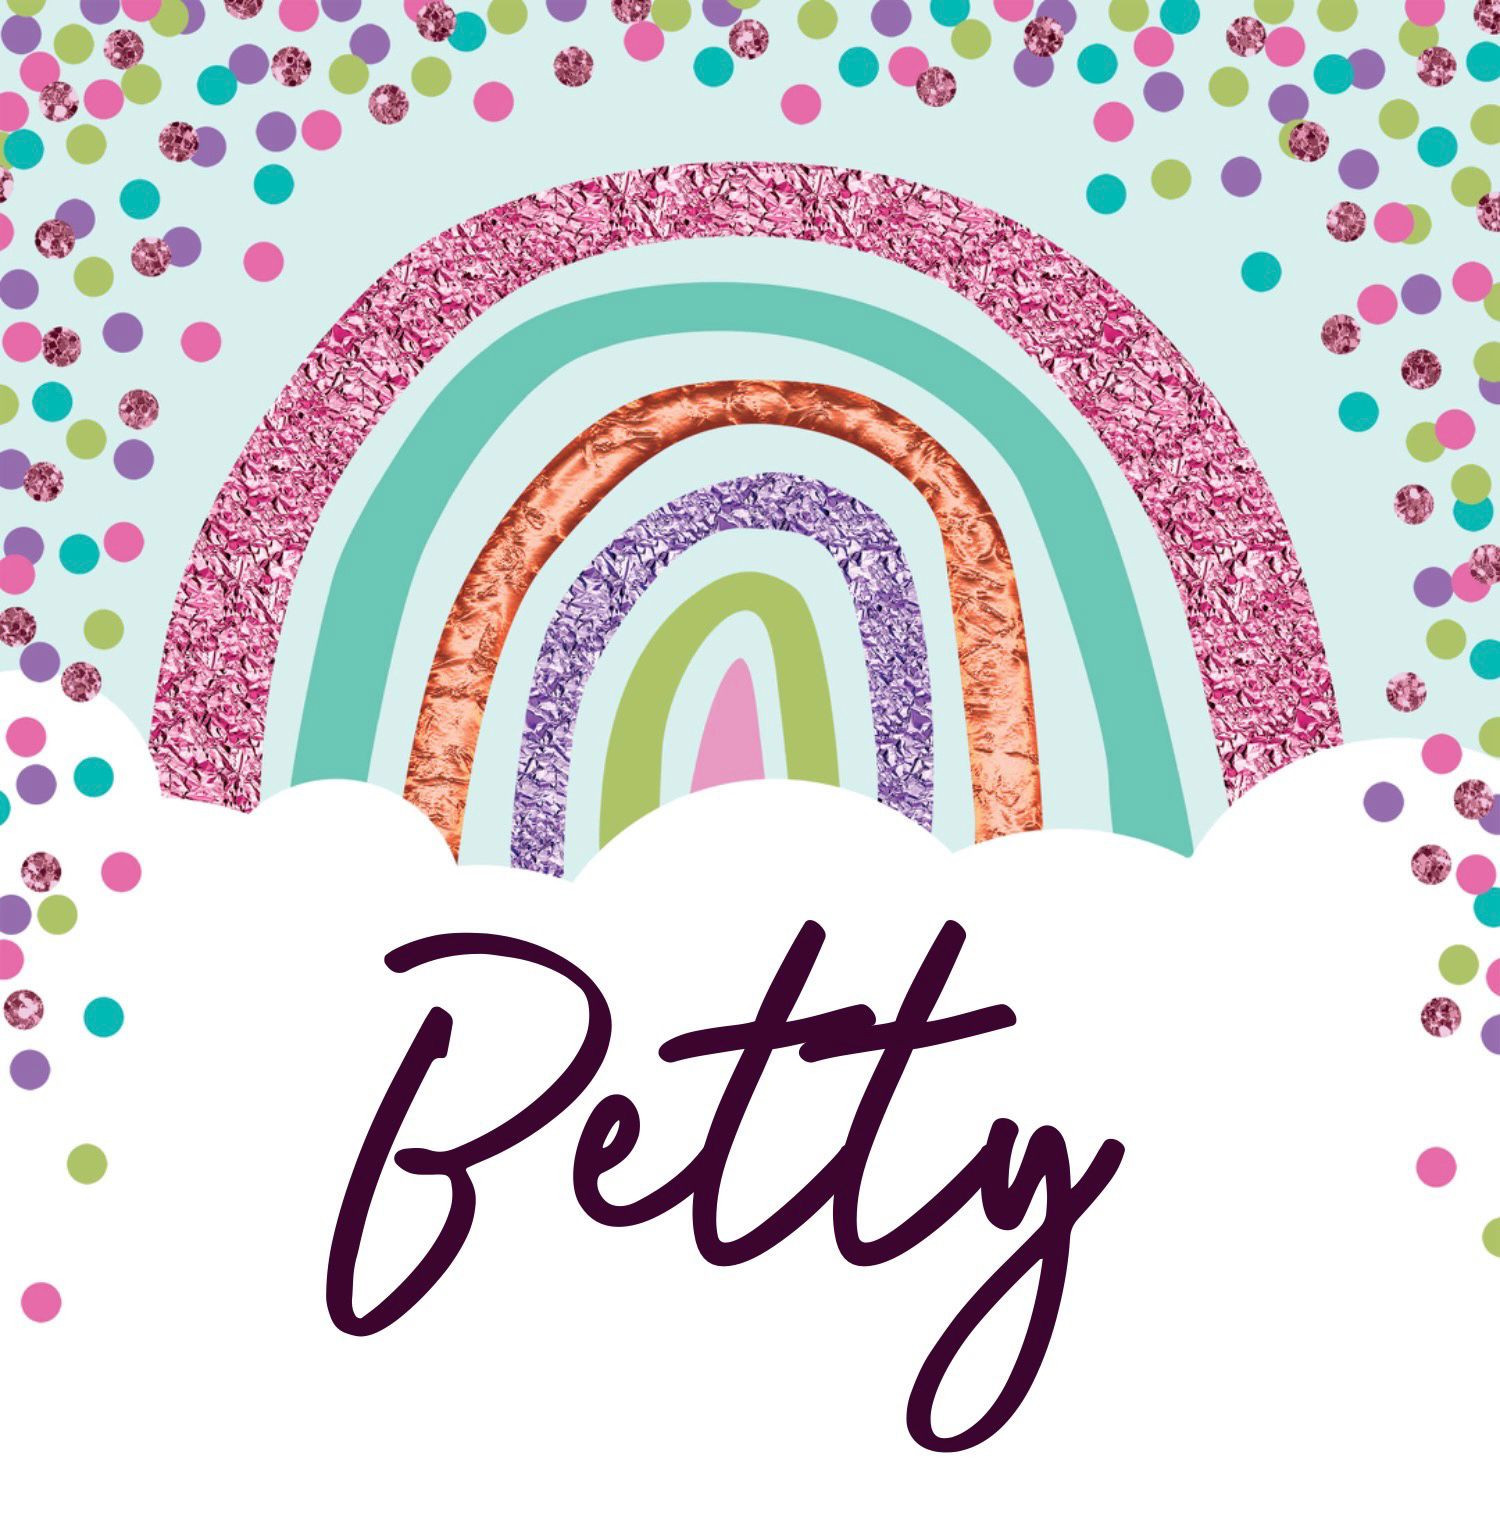 Cumpleaños de Betty